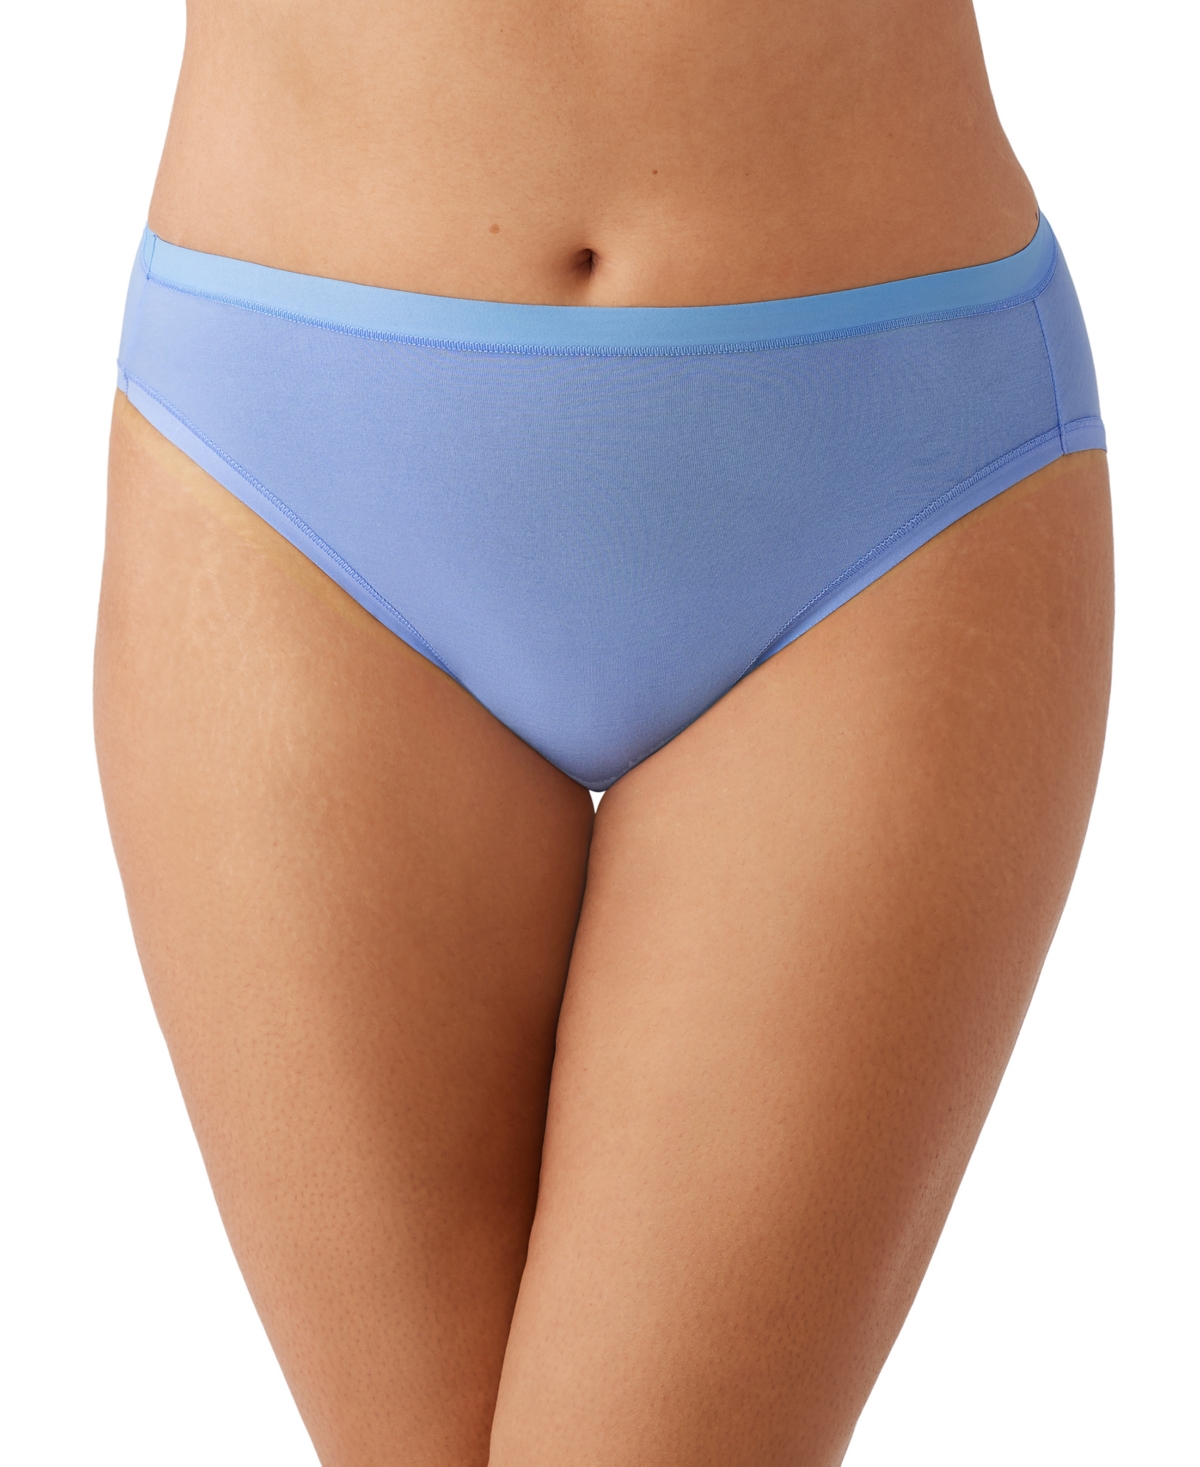 Wacoal Women's Understated Cotton Hi-cut Underwear 879362 In Blue Hydra